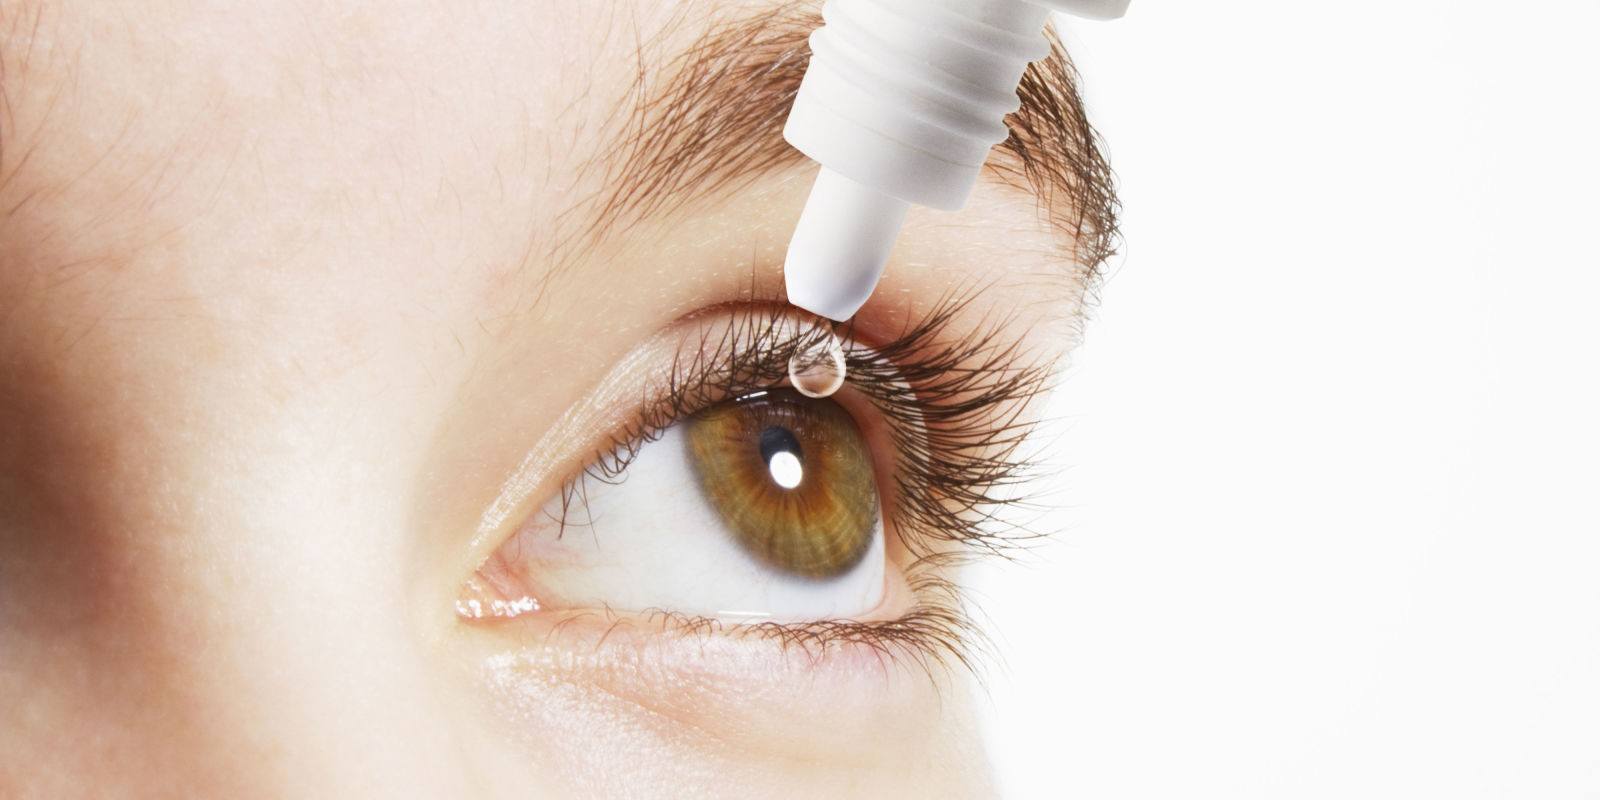 ثمانية نصائح للحد من أعراض العين الجافة